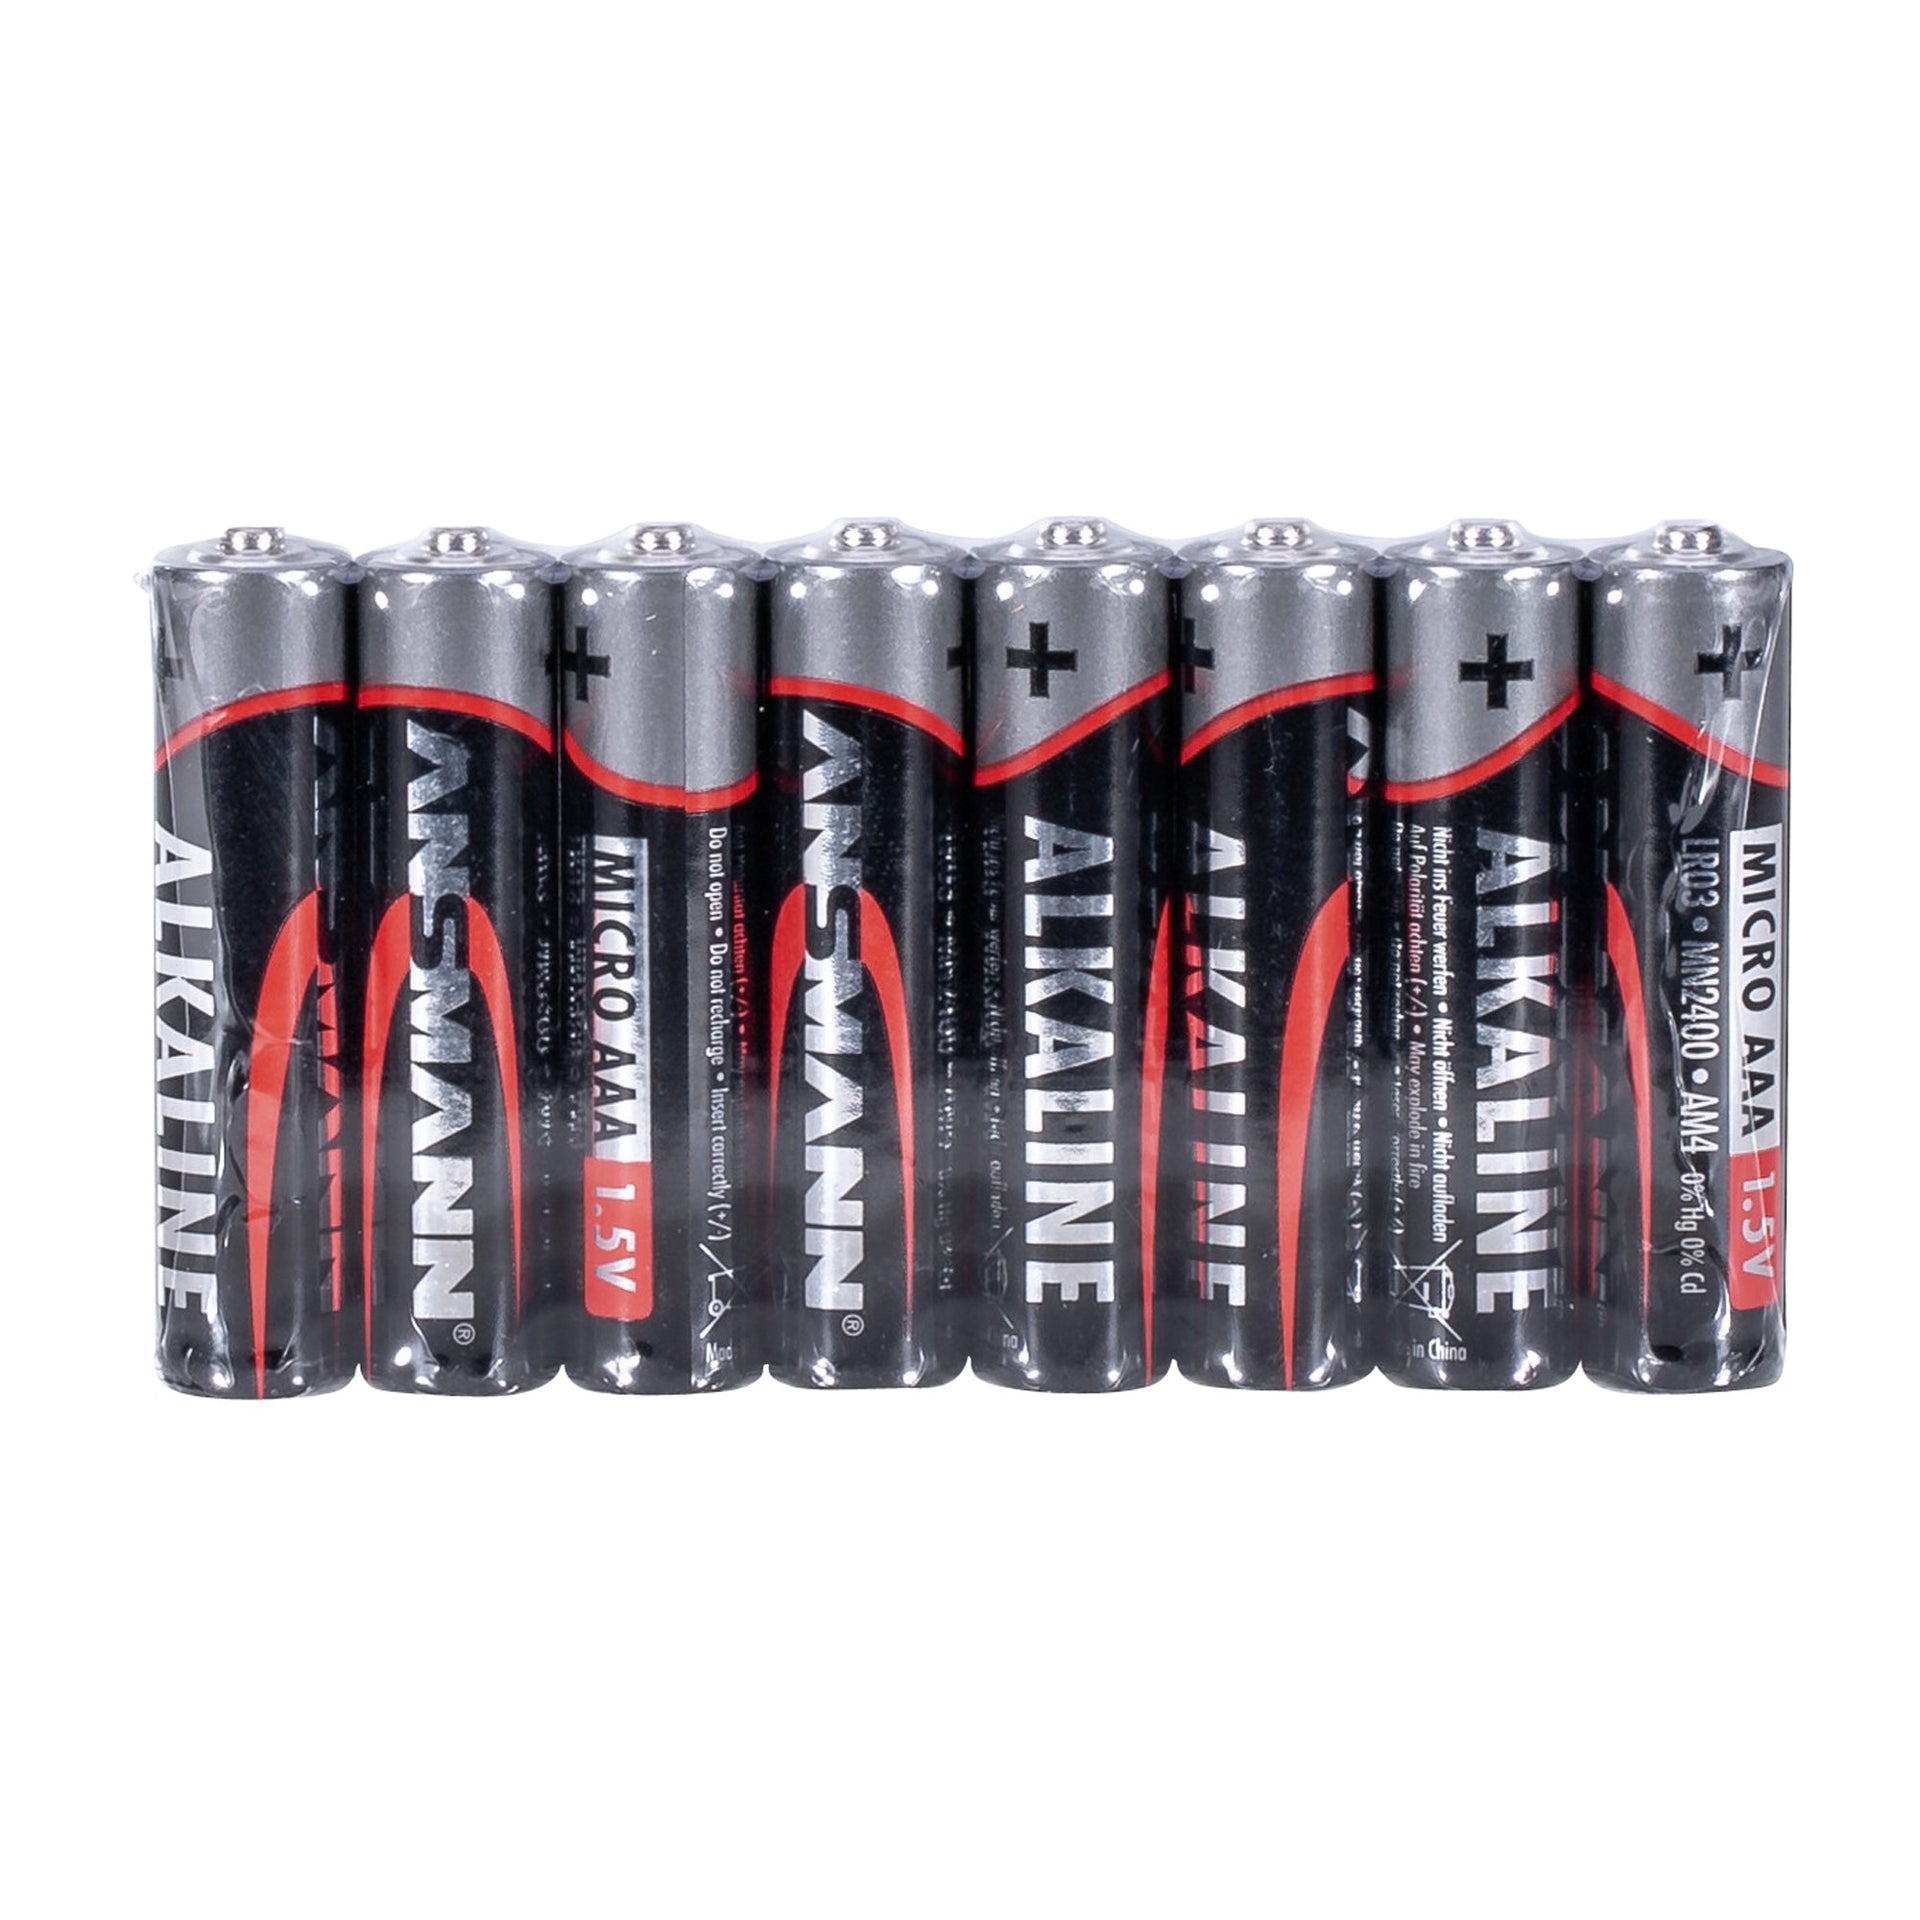 Battery Alkaline AAA 1.5 V 8 pack